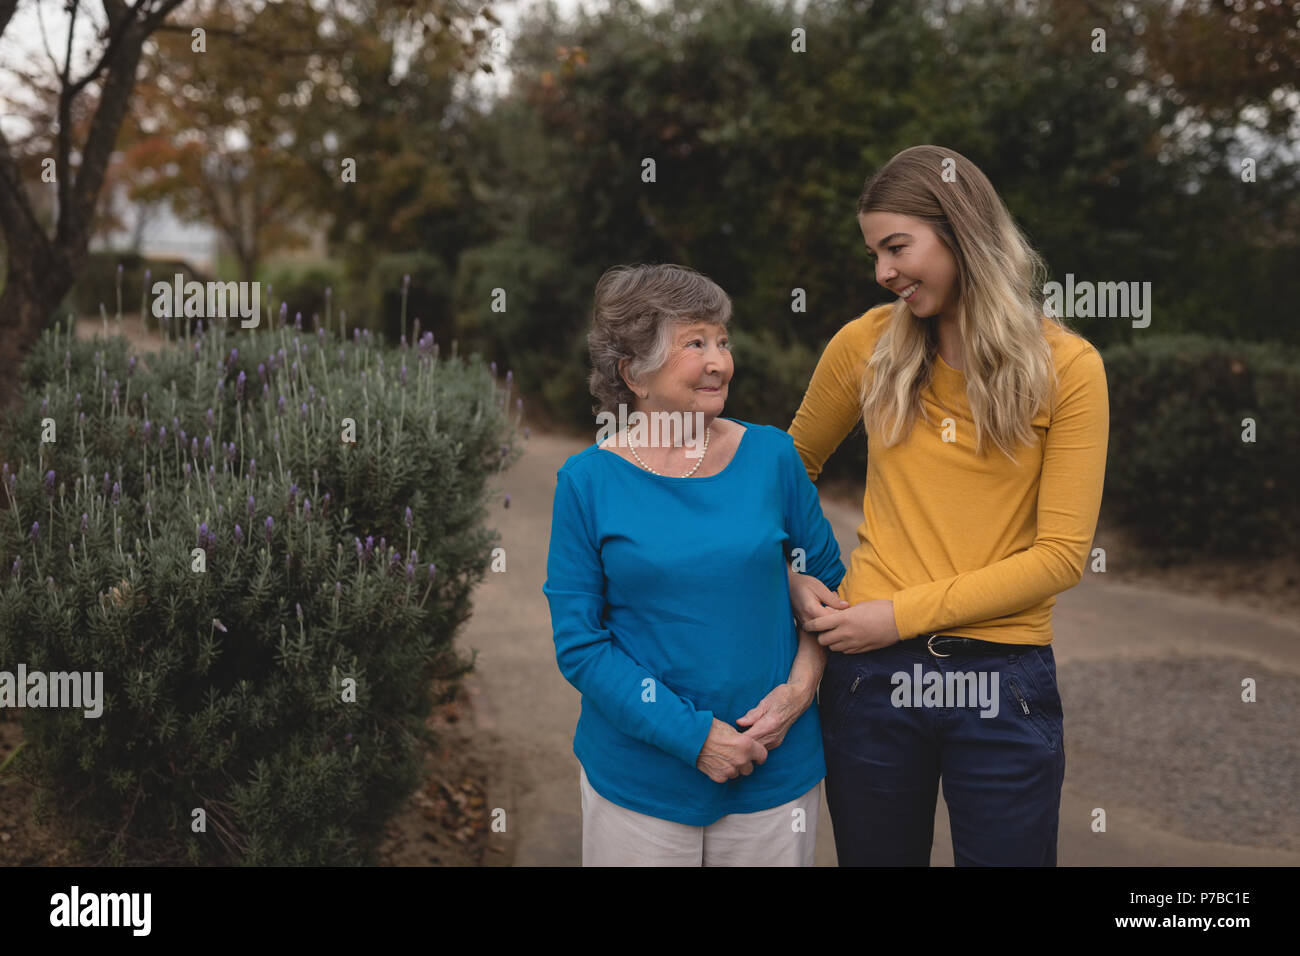 La nipote e nonna camminando sul marciapiede Foto Stock